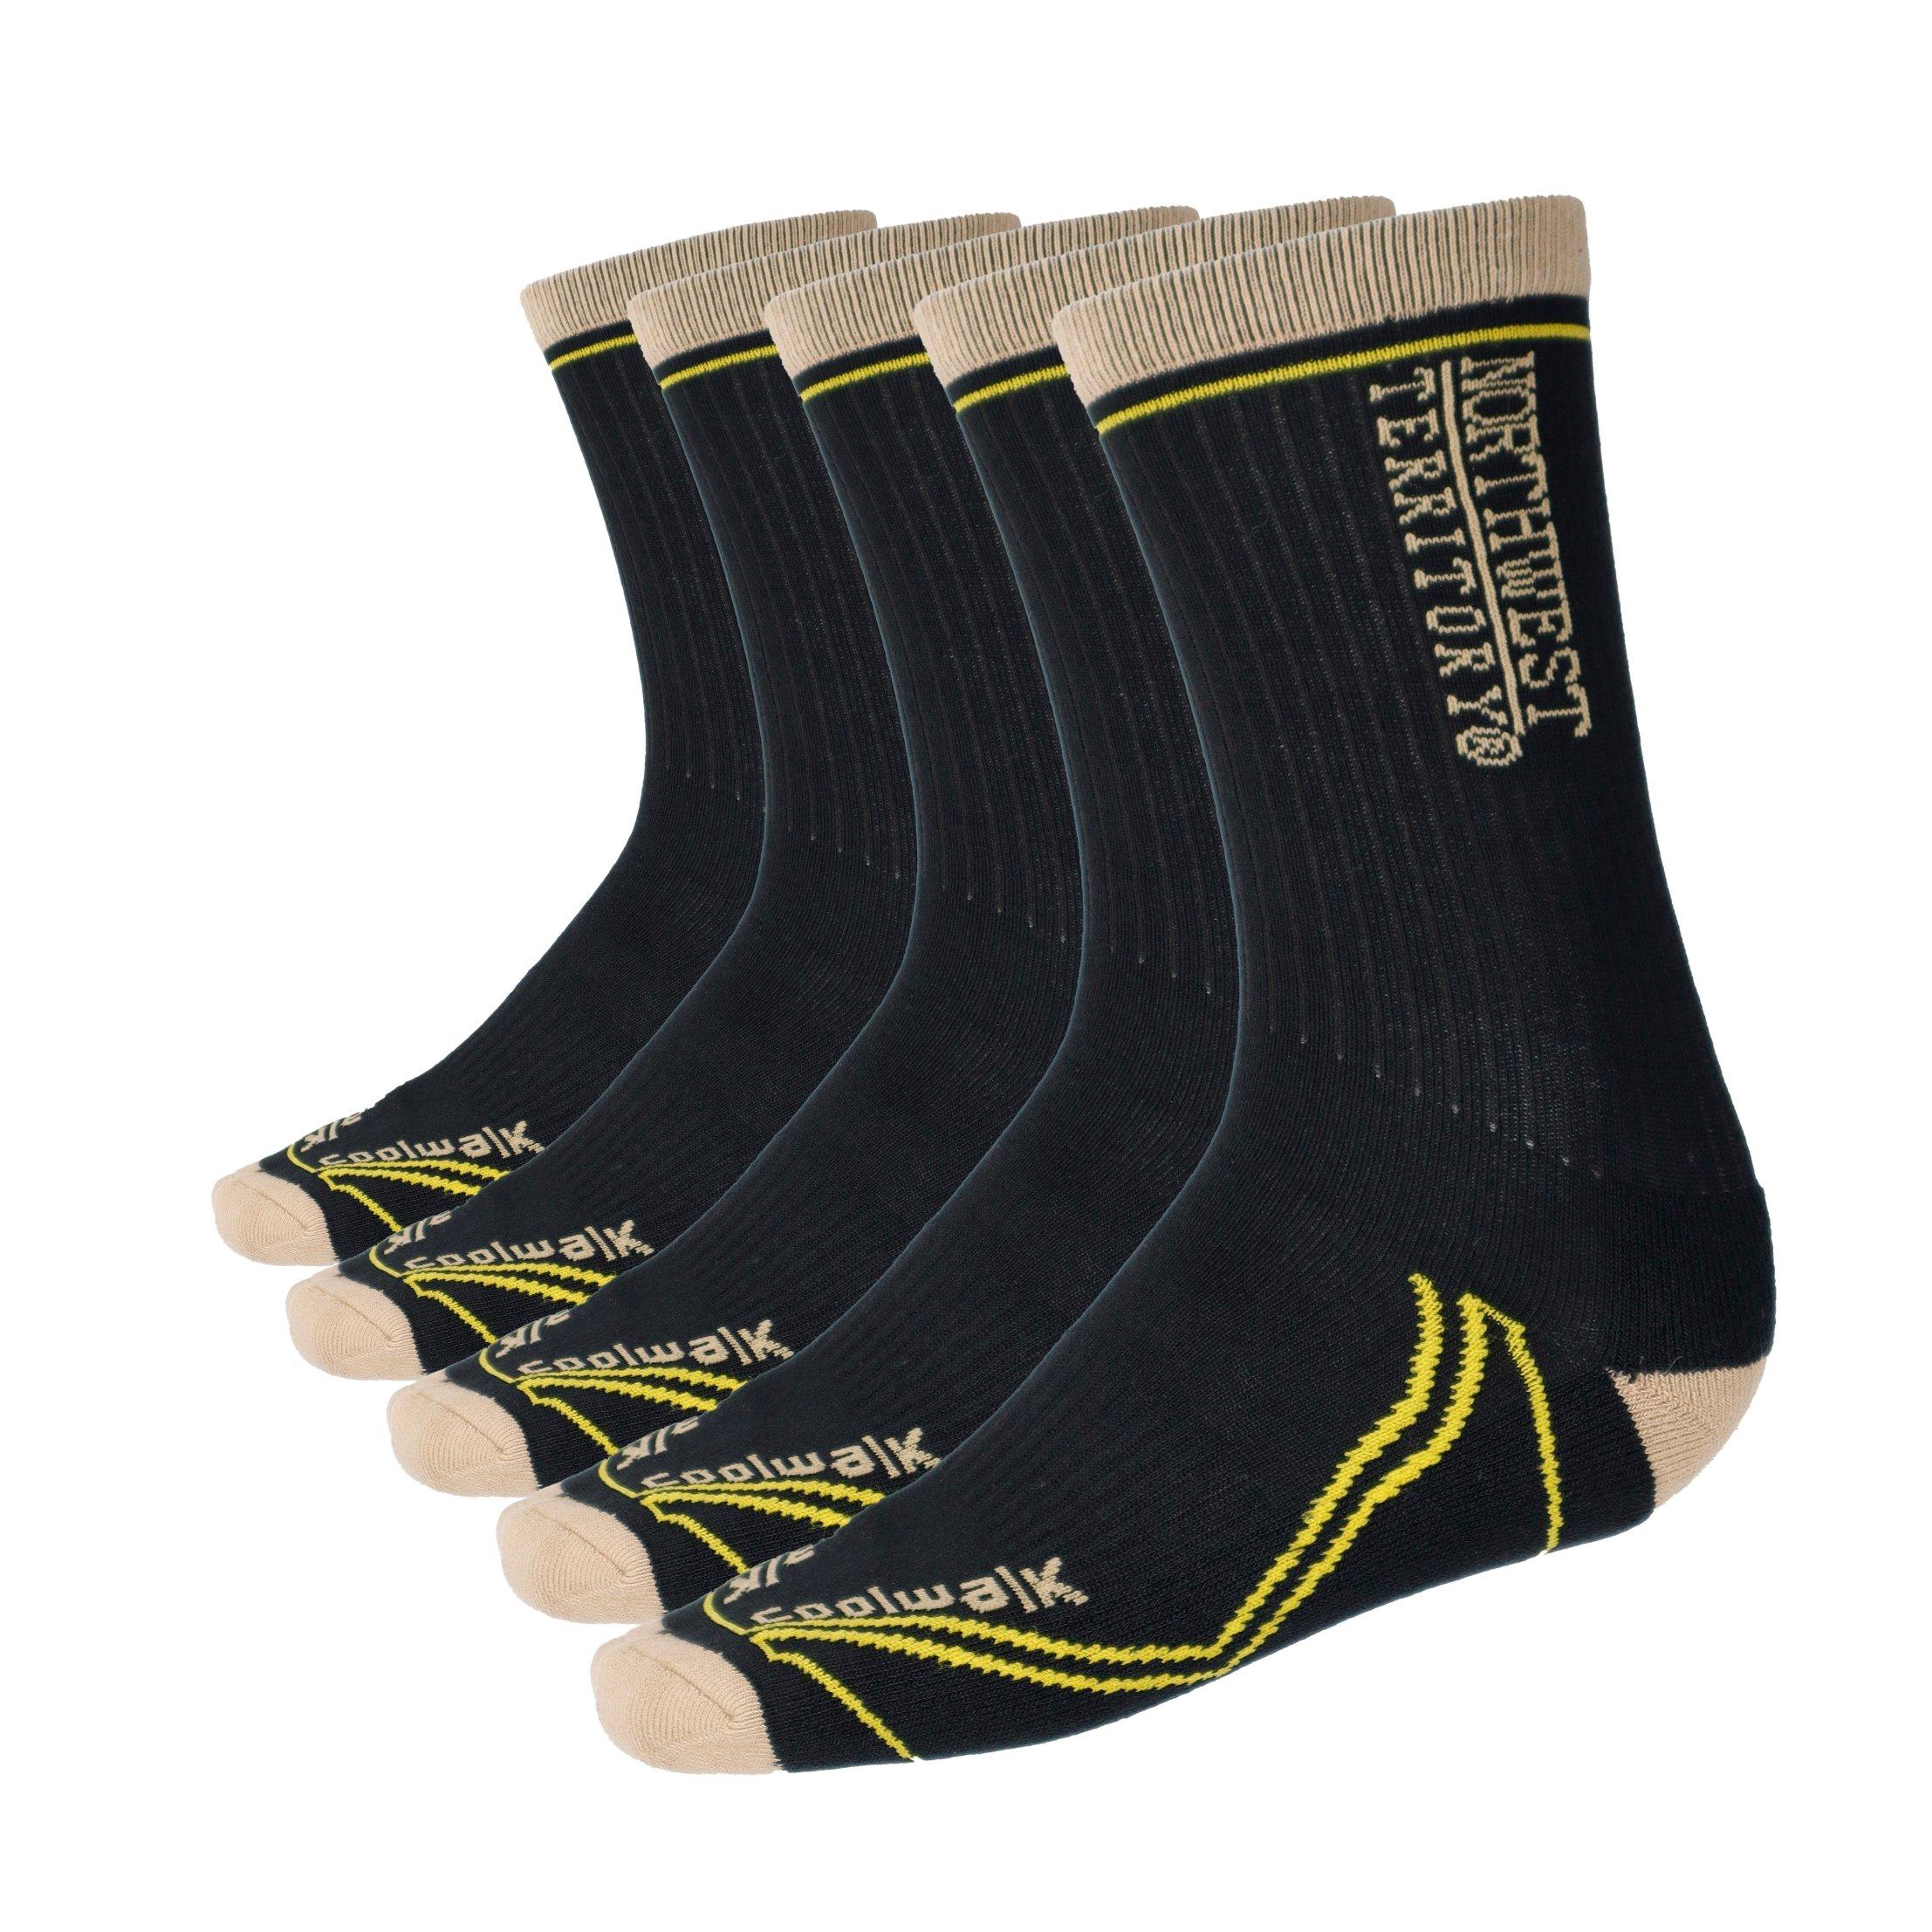 Мужские носки Coolwalk, влагоотводящие, устойчивые к поту, с арочной поддержкой, спортивные носки для пешего туризма и ходьбы Northwest Territory, черный набор мужских носков oemen адриан